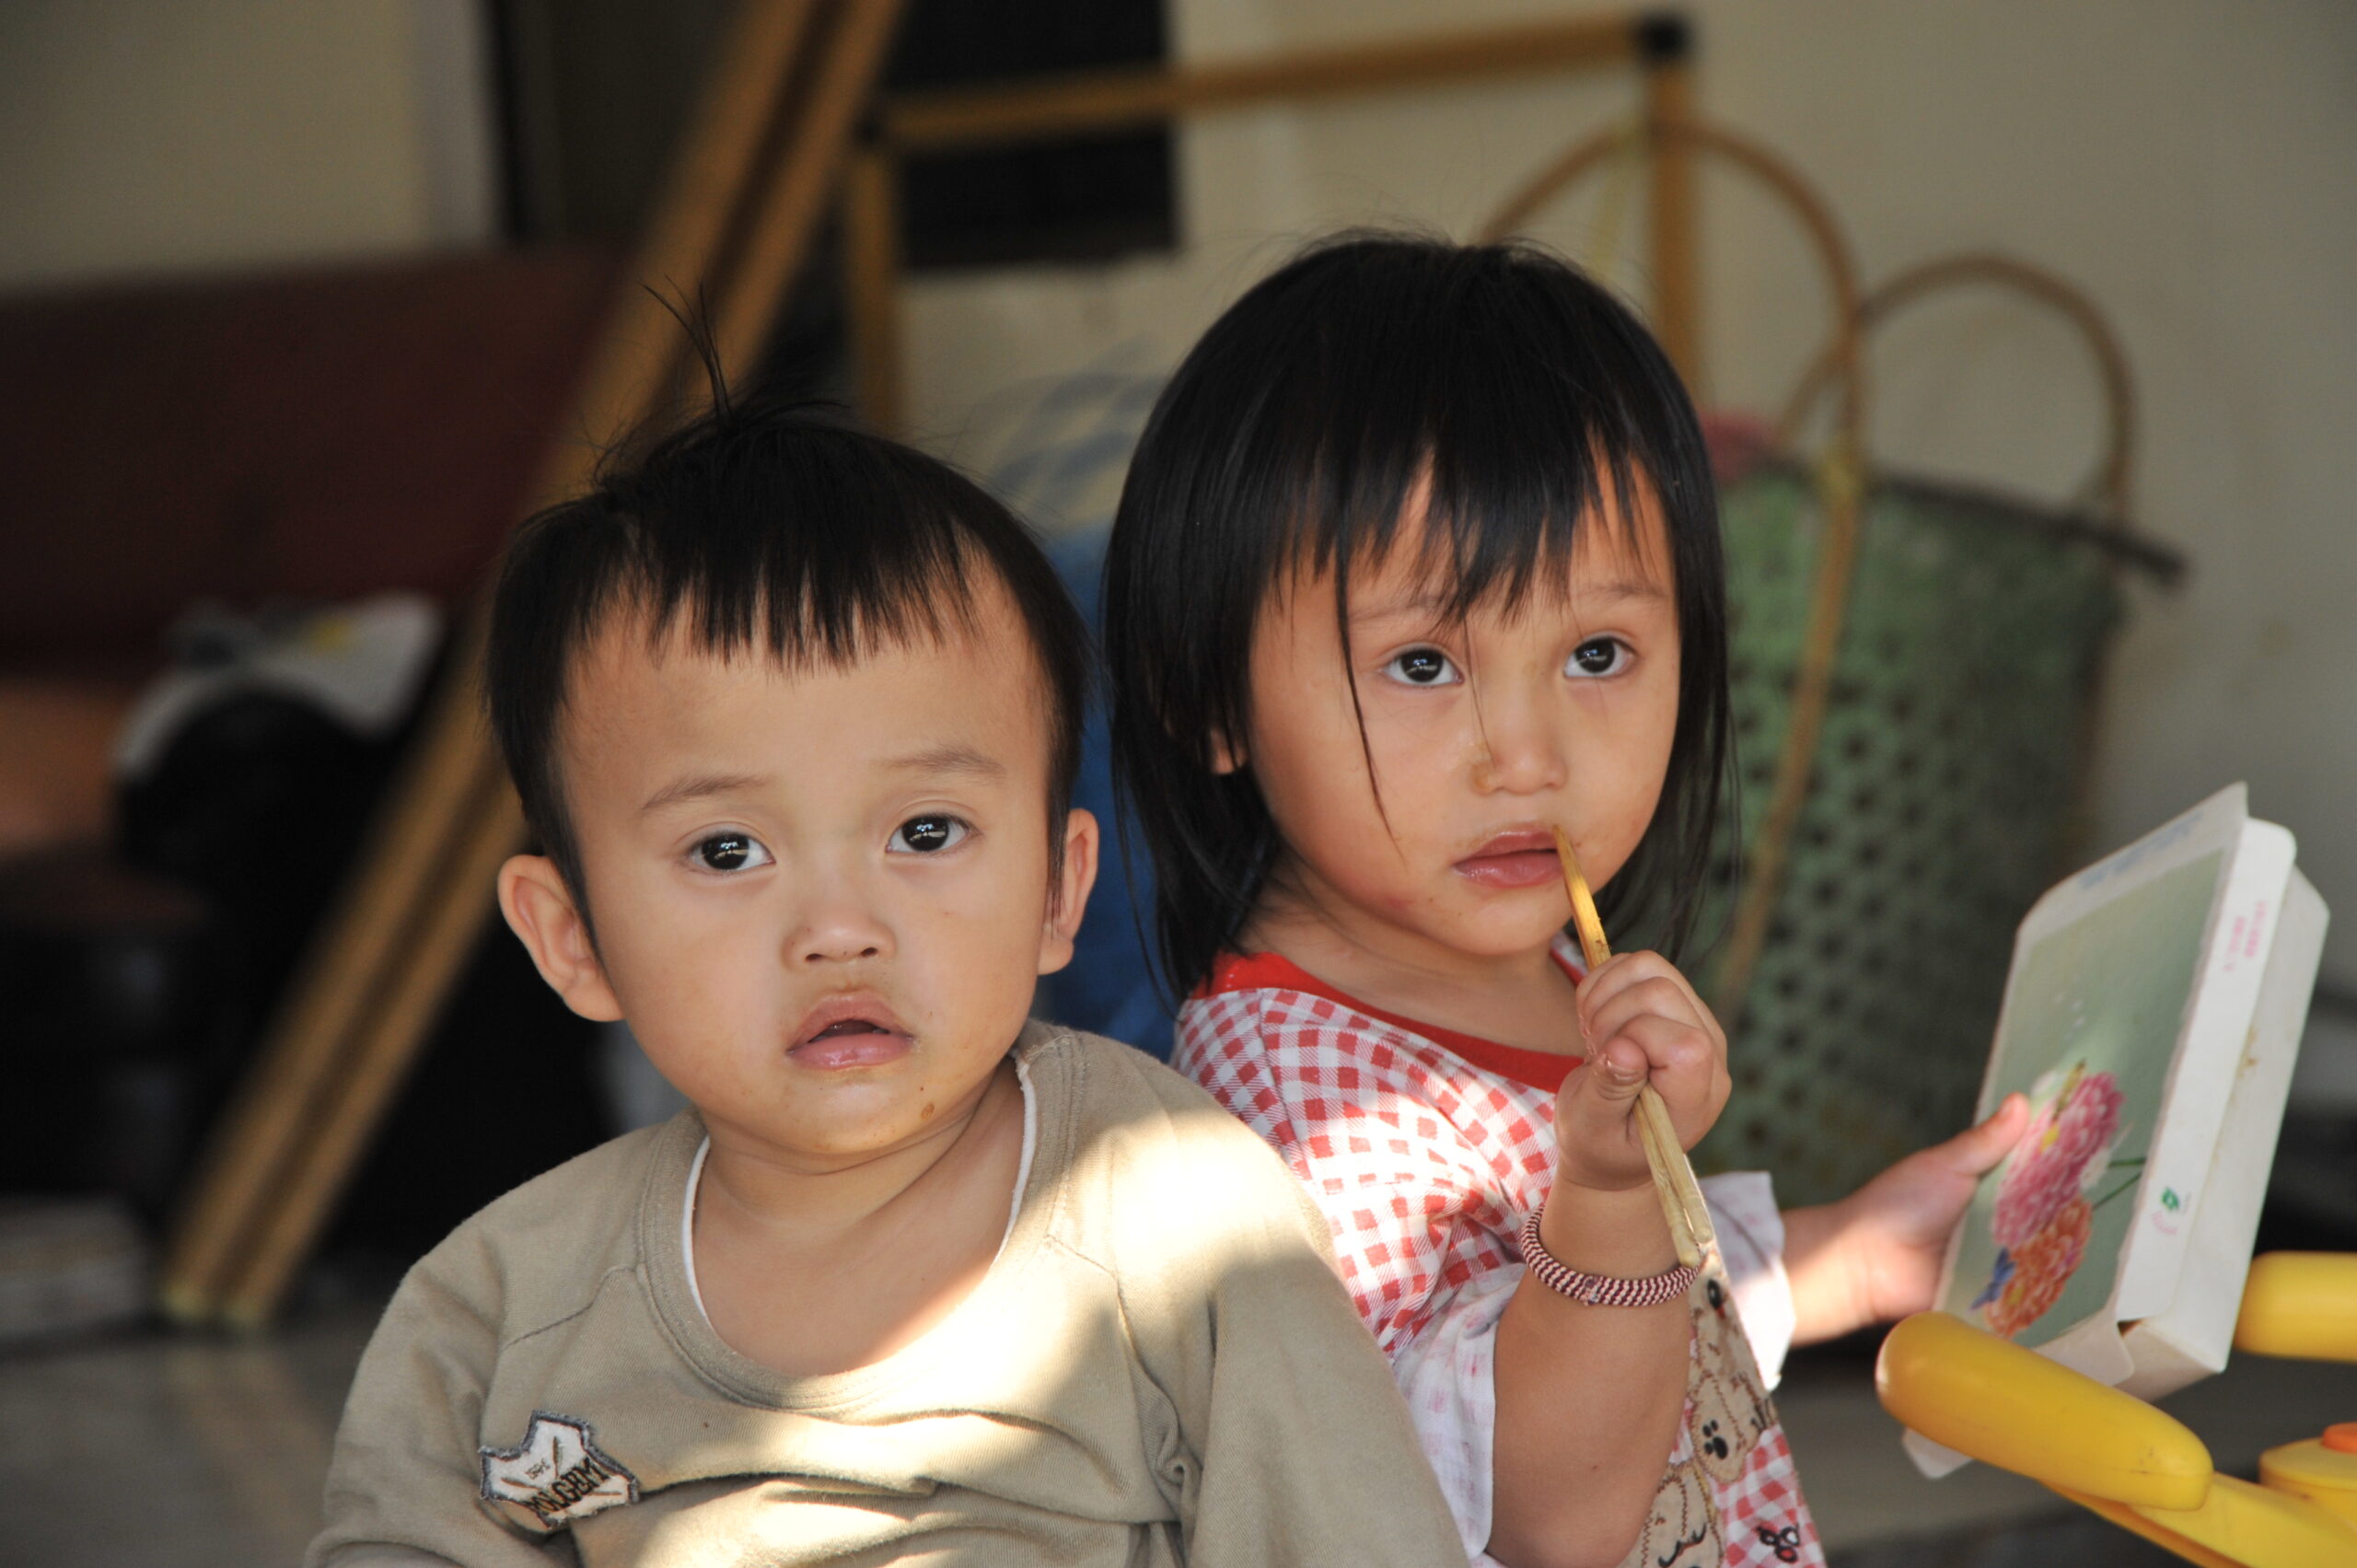 Zwei taiwanische Kleinkinder, ein Junge und ein Mädchen, das Stäbchen an seinen Mund hält, schauen in die Kamera.